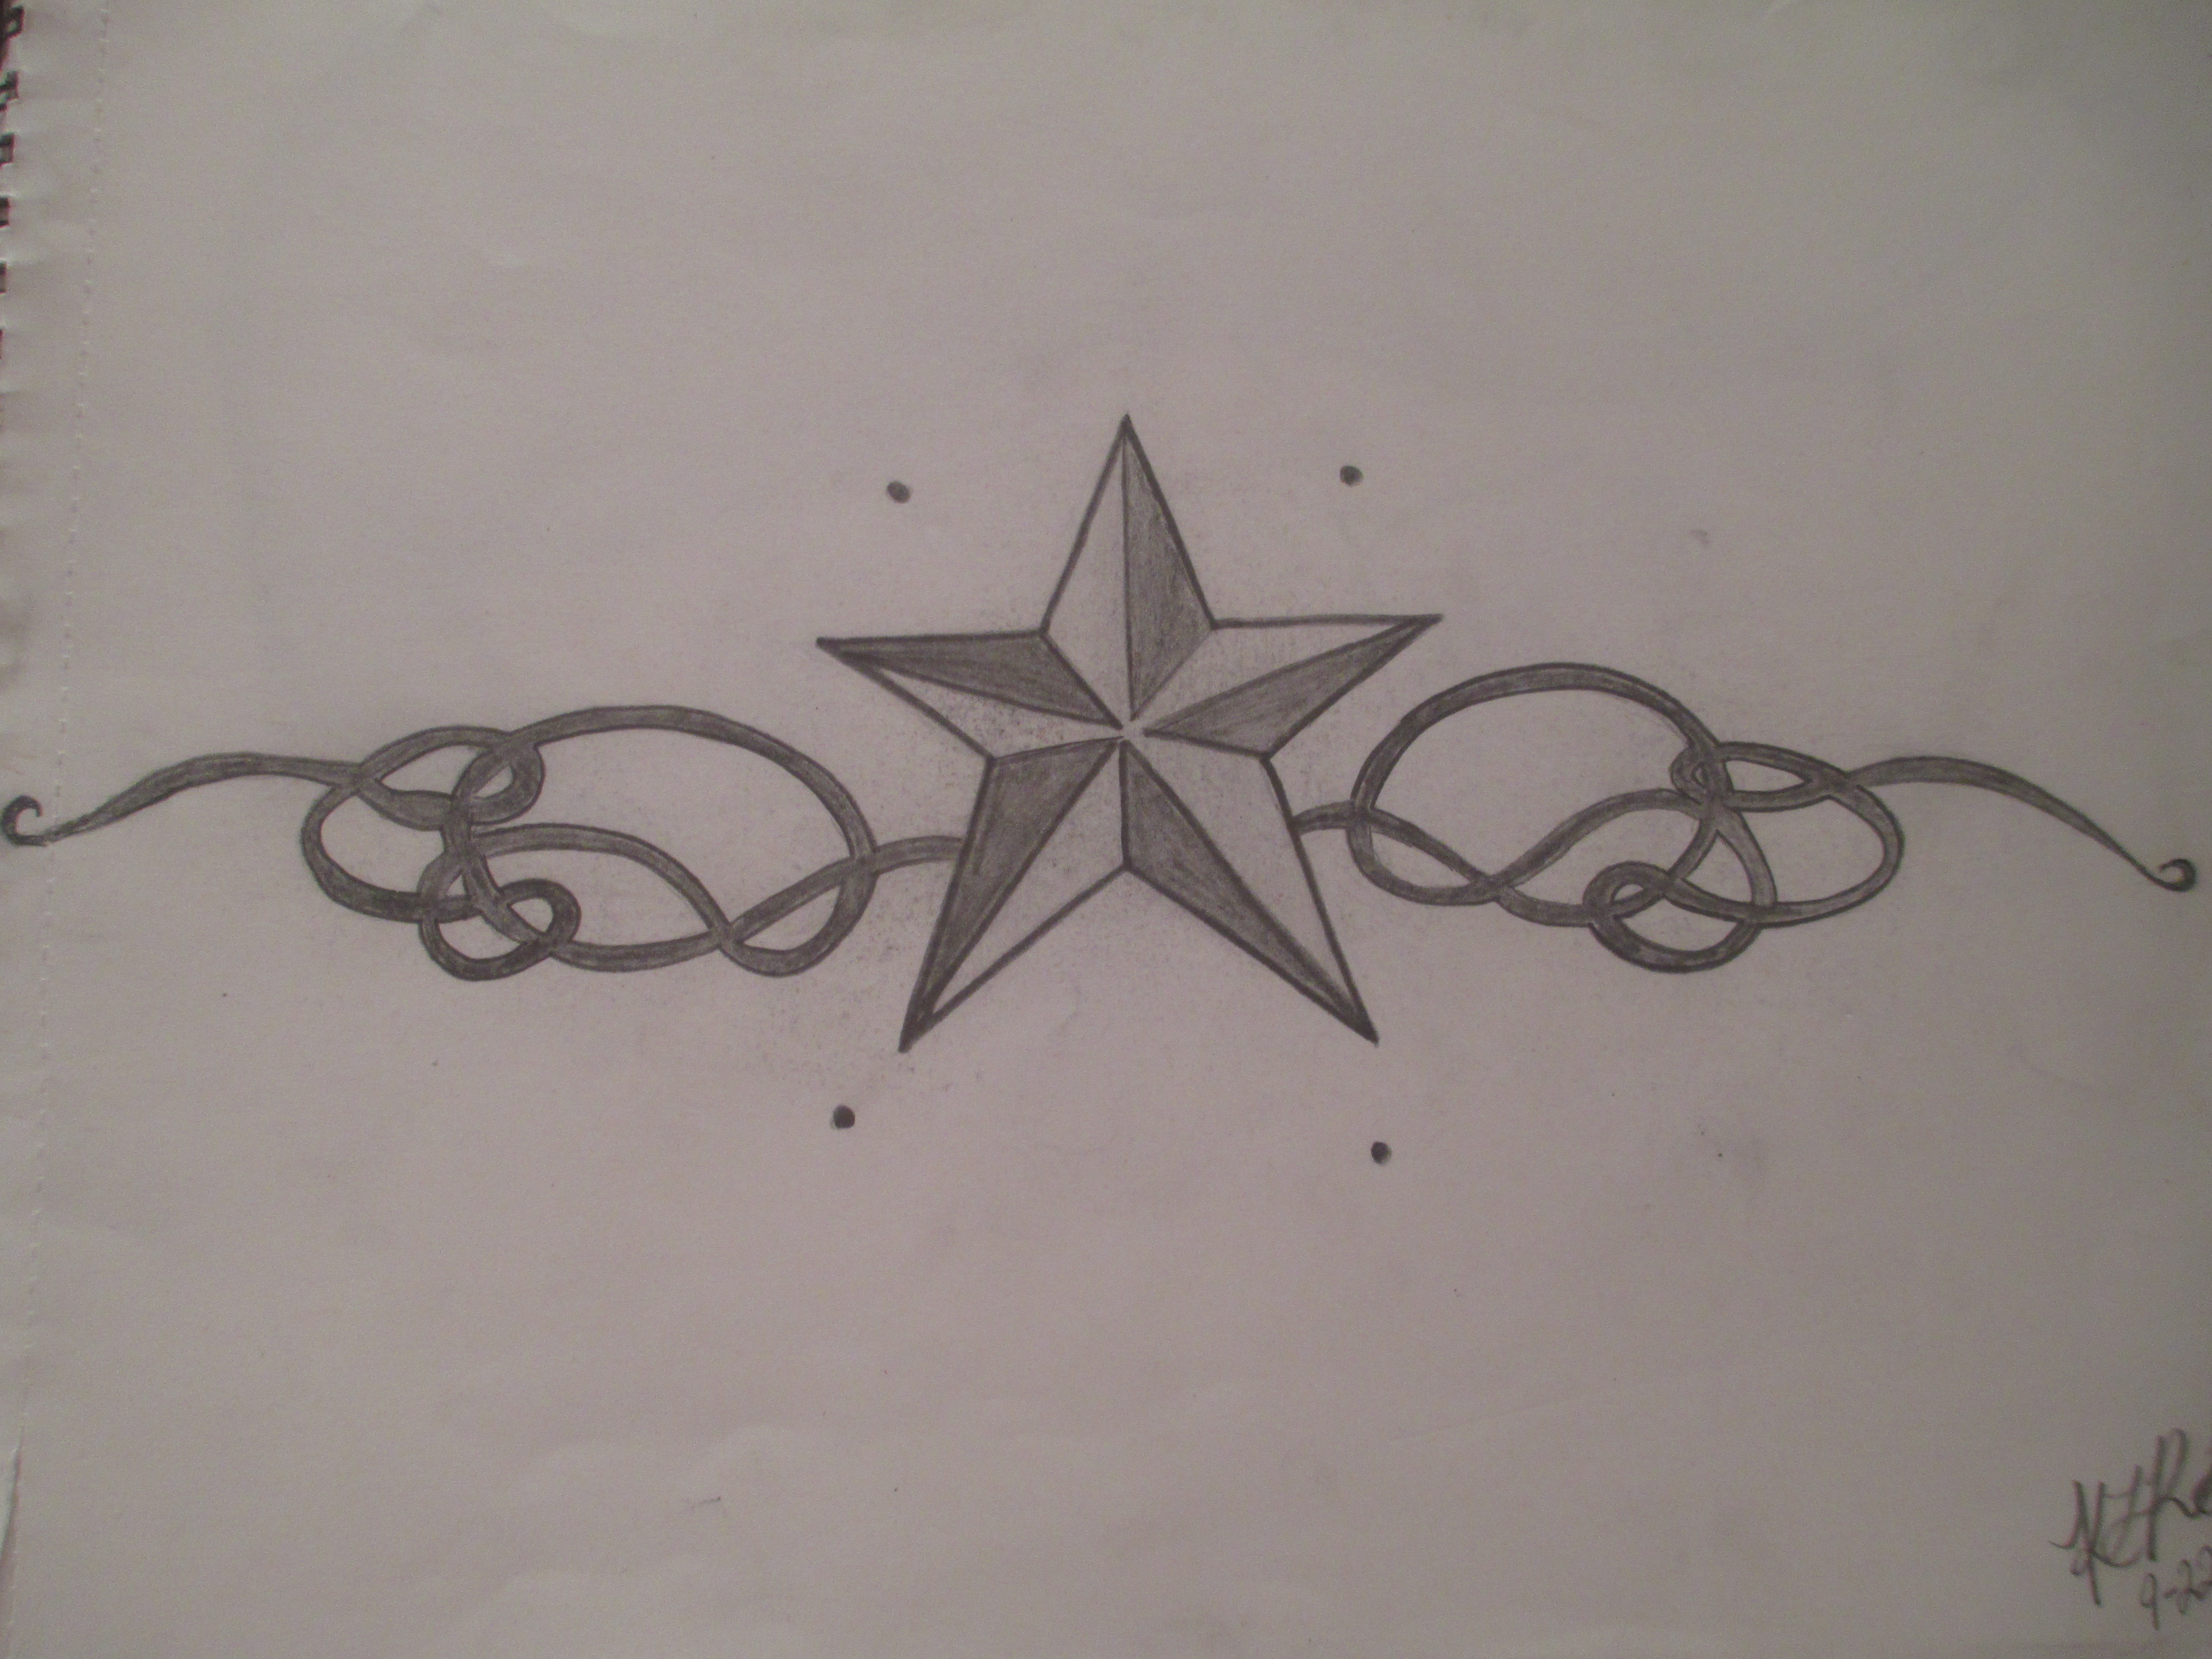 Star Tattoo Drawing - ArtistGirl99 © 2015 - Jan 21, 2013